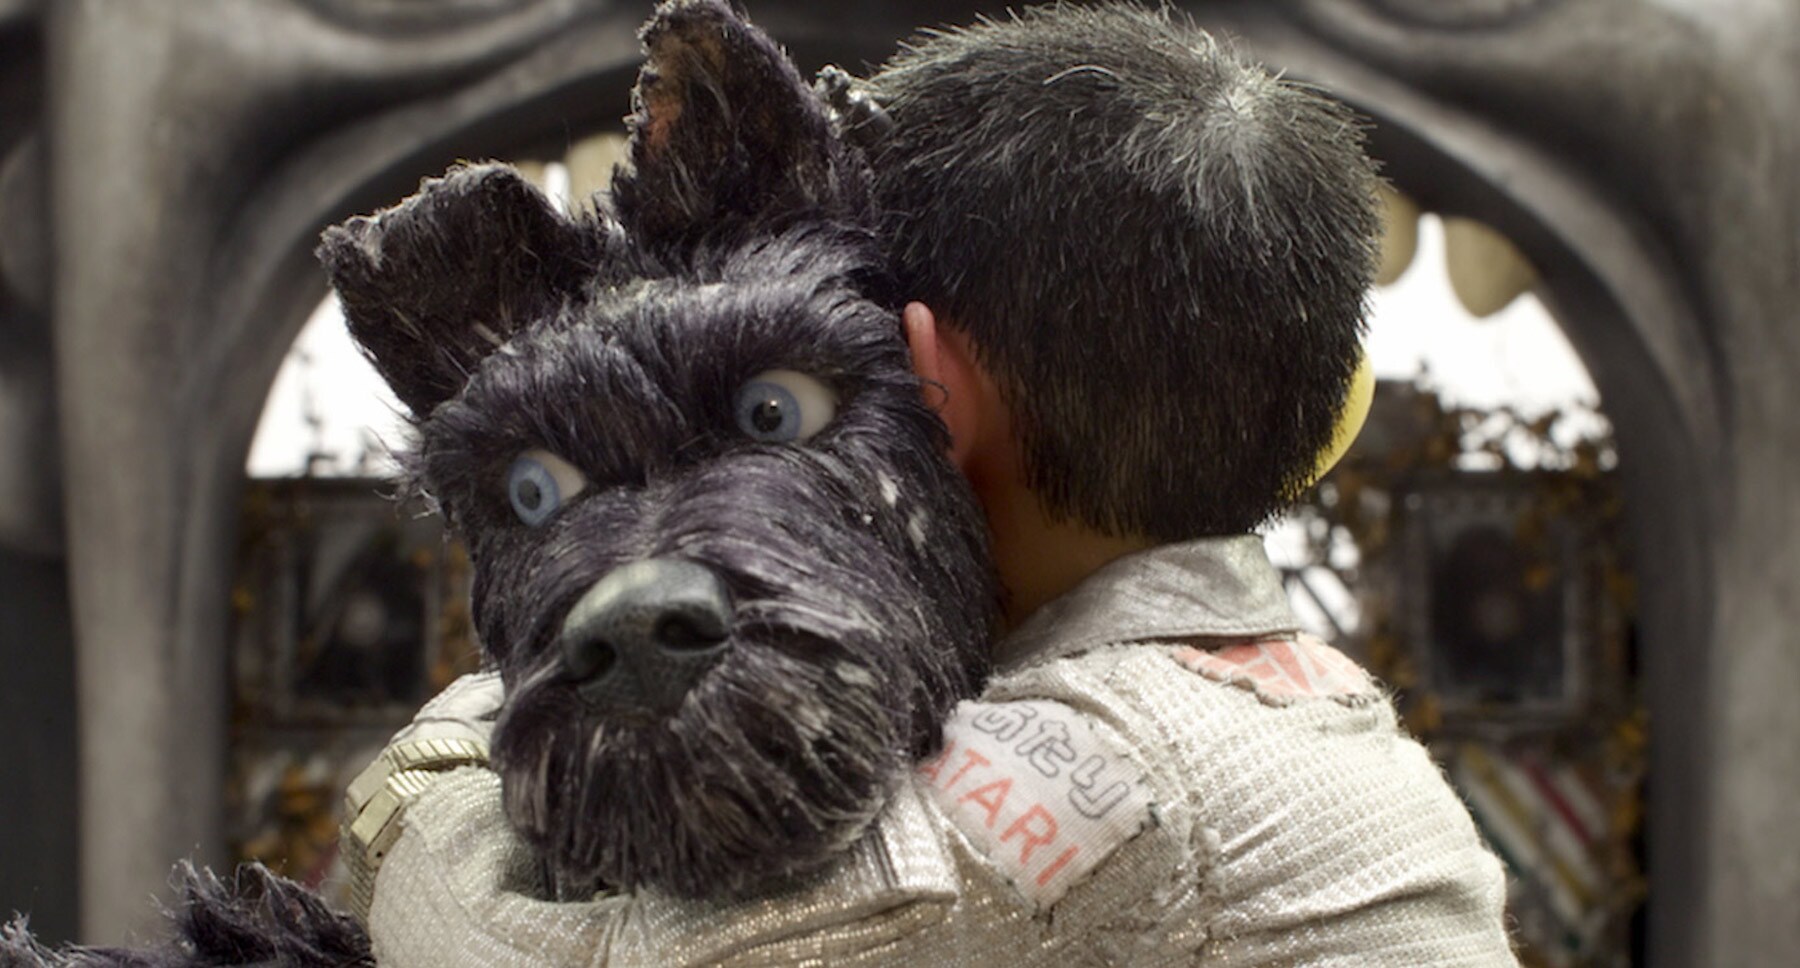 Bryan Cranston (as Chief) and Koyu Rankin (Atari) in a hug in "Isle of Dogs"